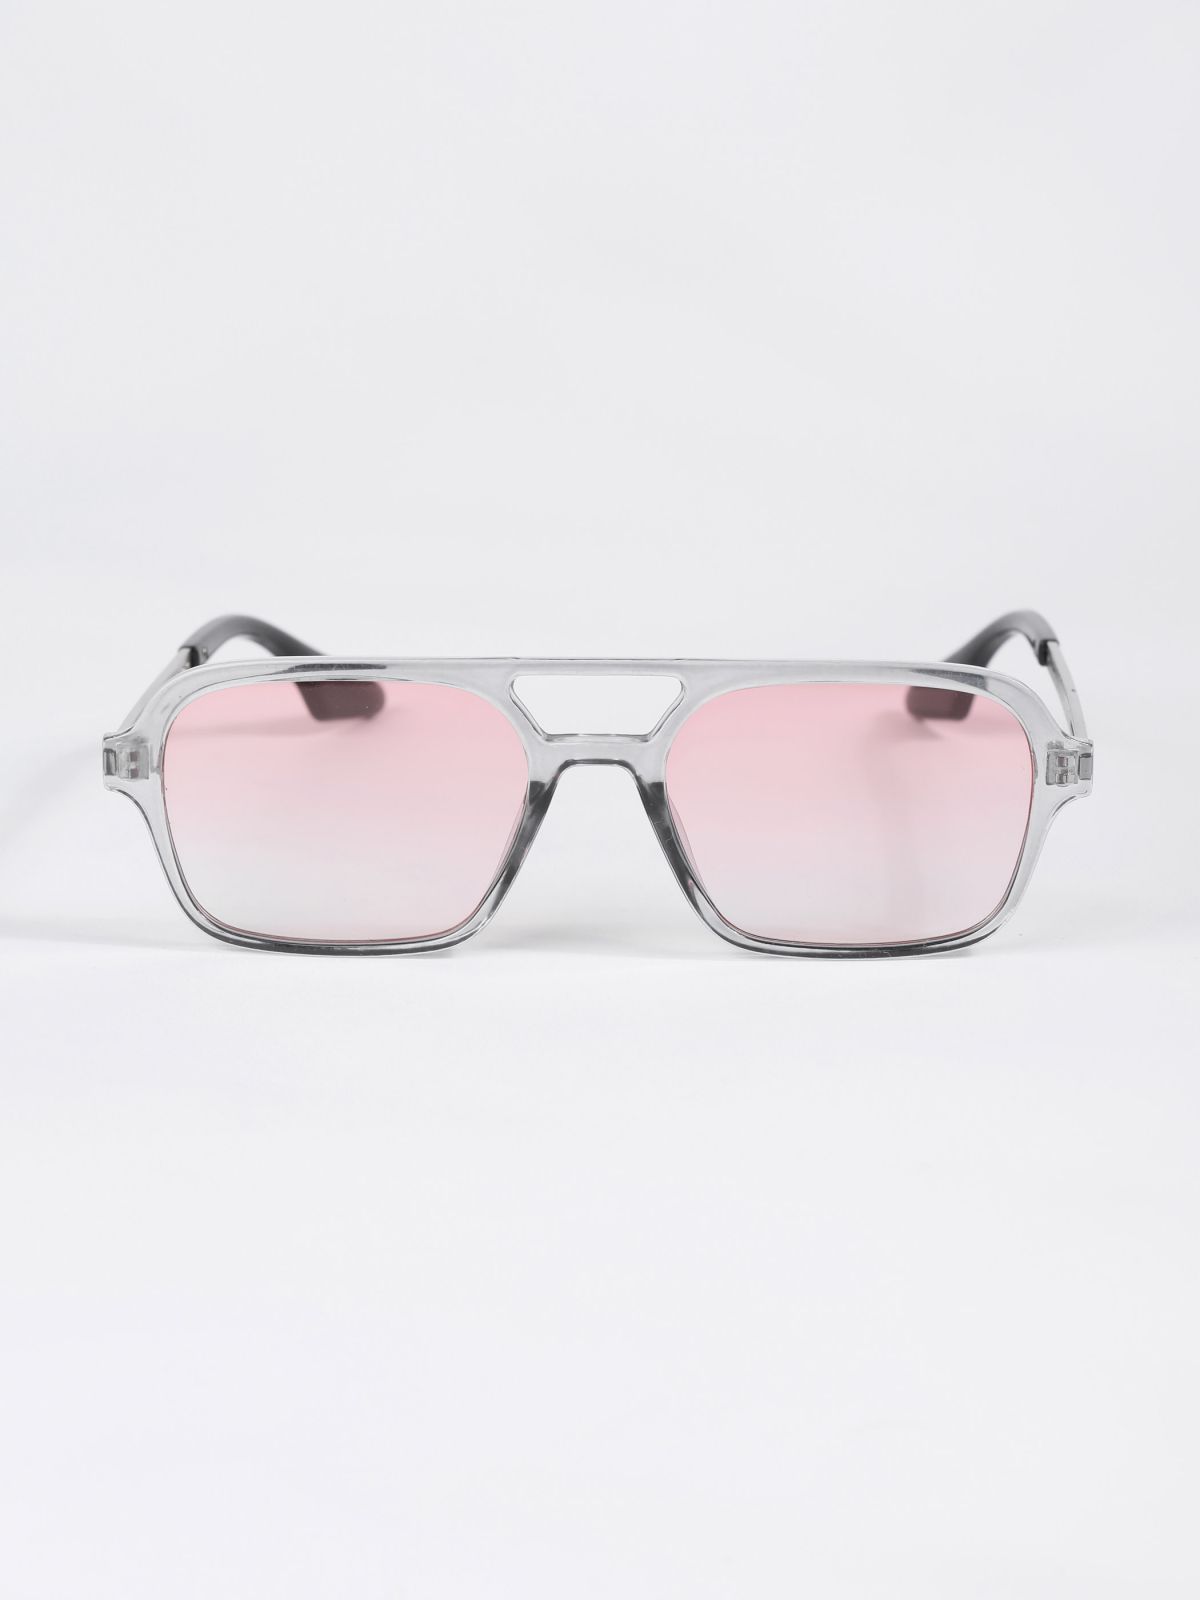  משקפי שמש מלבניים אסימטרים / TX Eyewear Collection של TERMINAL X